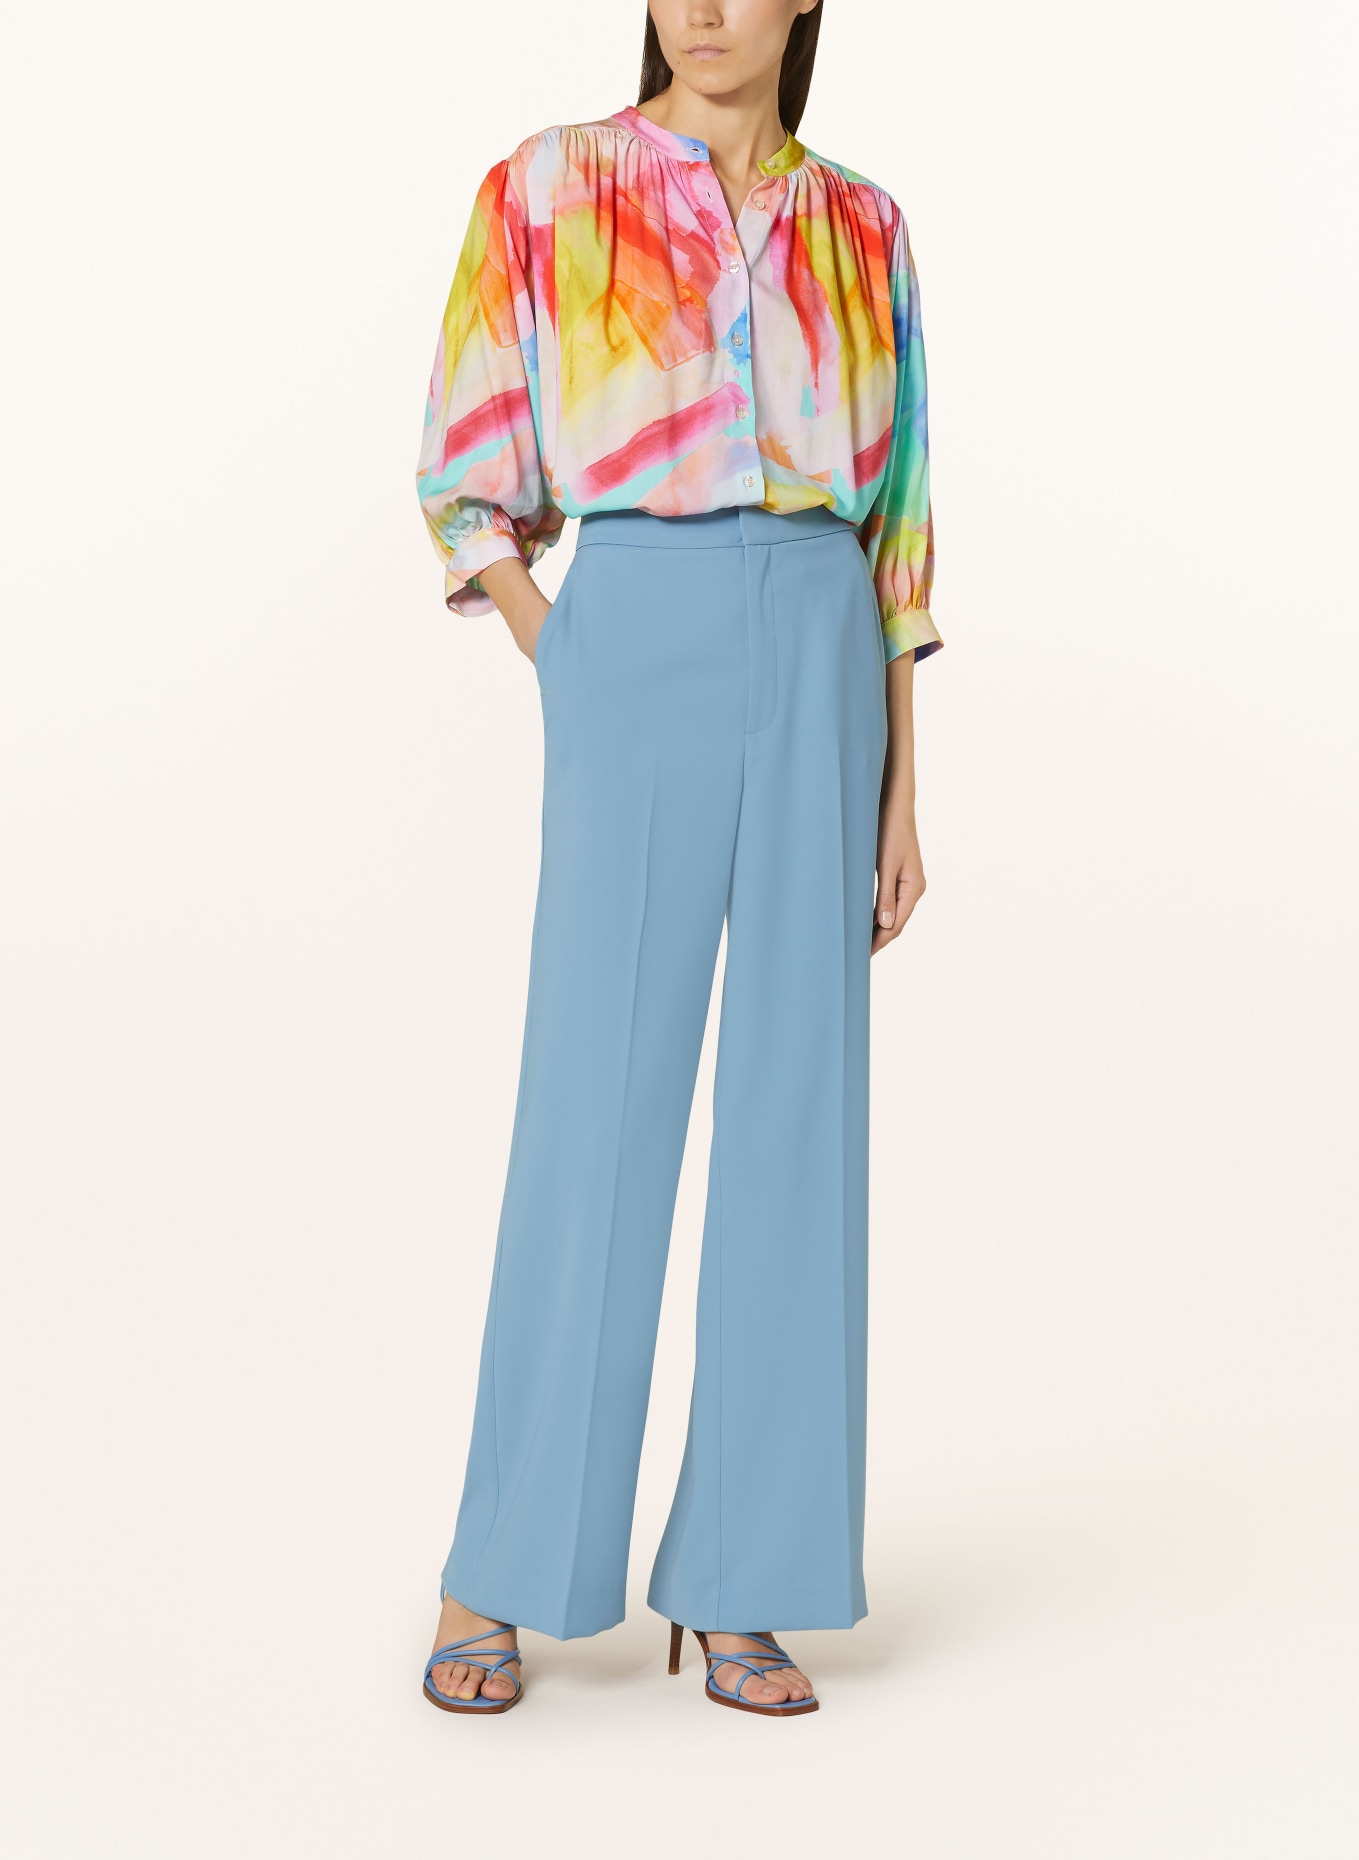 Emily VAN DEN BERGH Bluse mit 3/4-Arm, Farbe: GELB/ ORANGE/ BLAU (Bild 2)